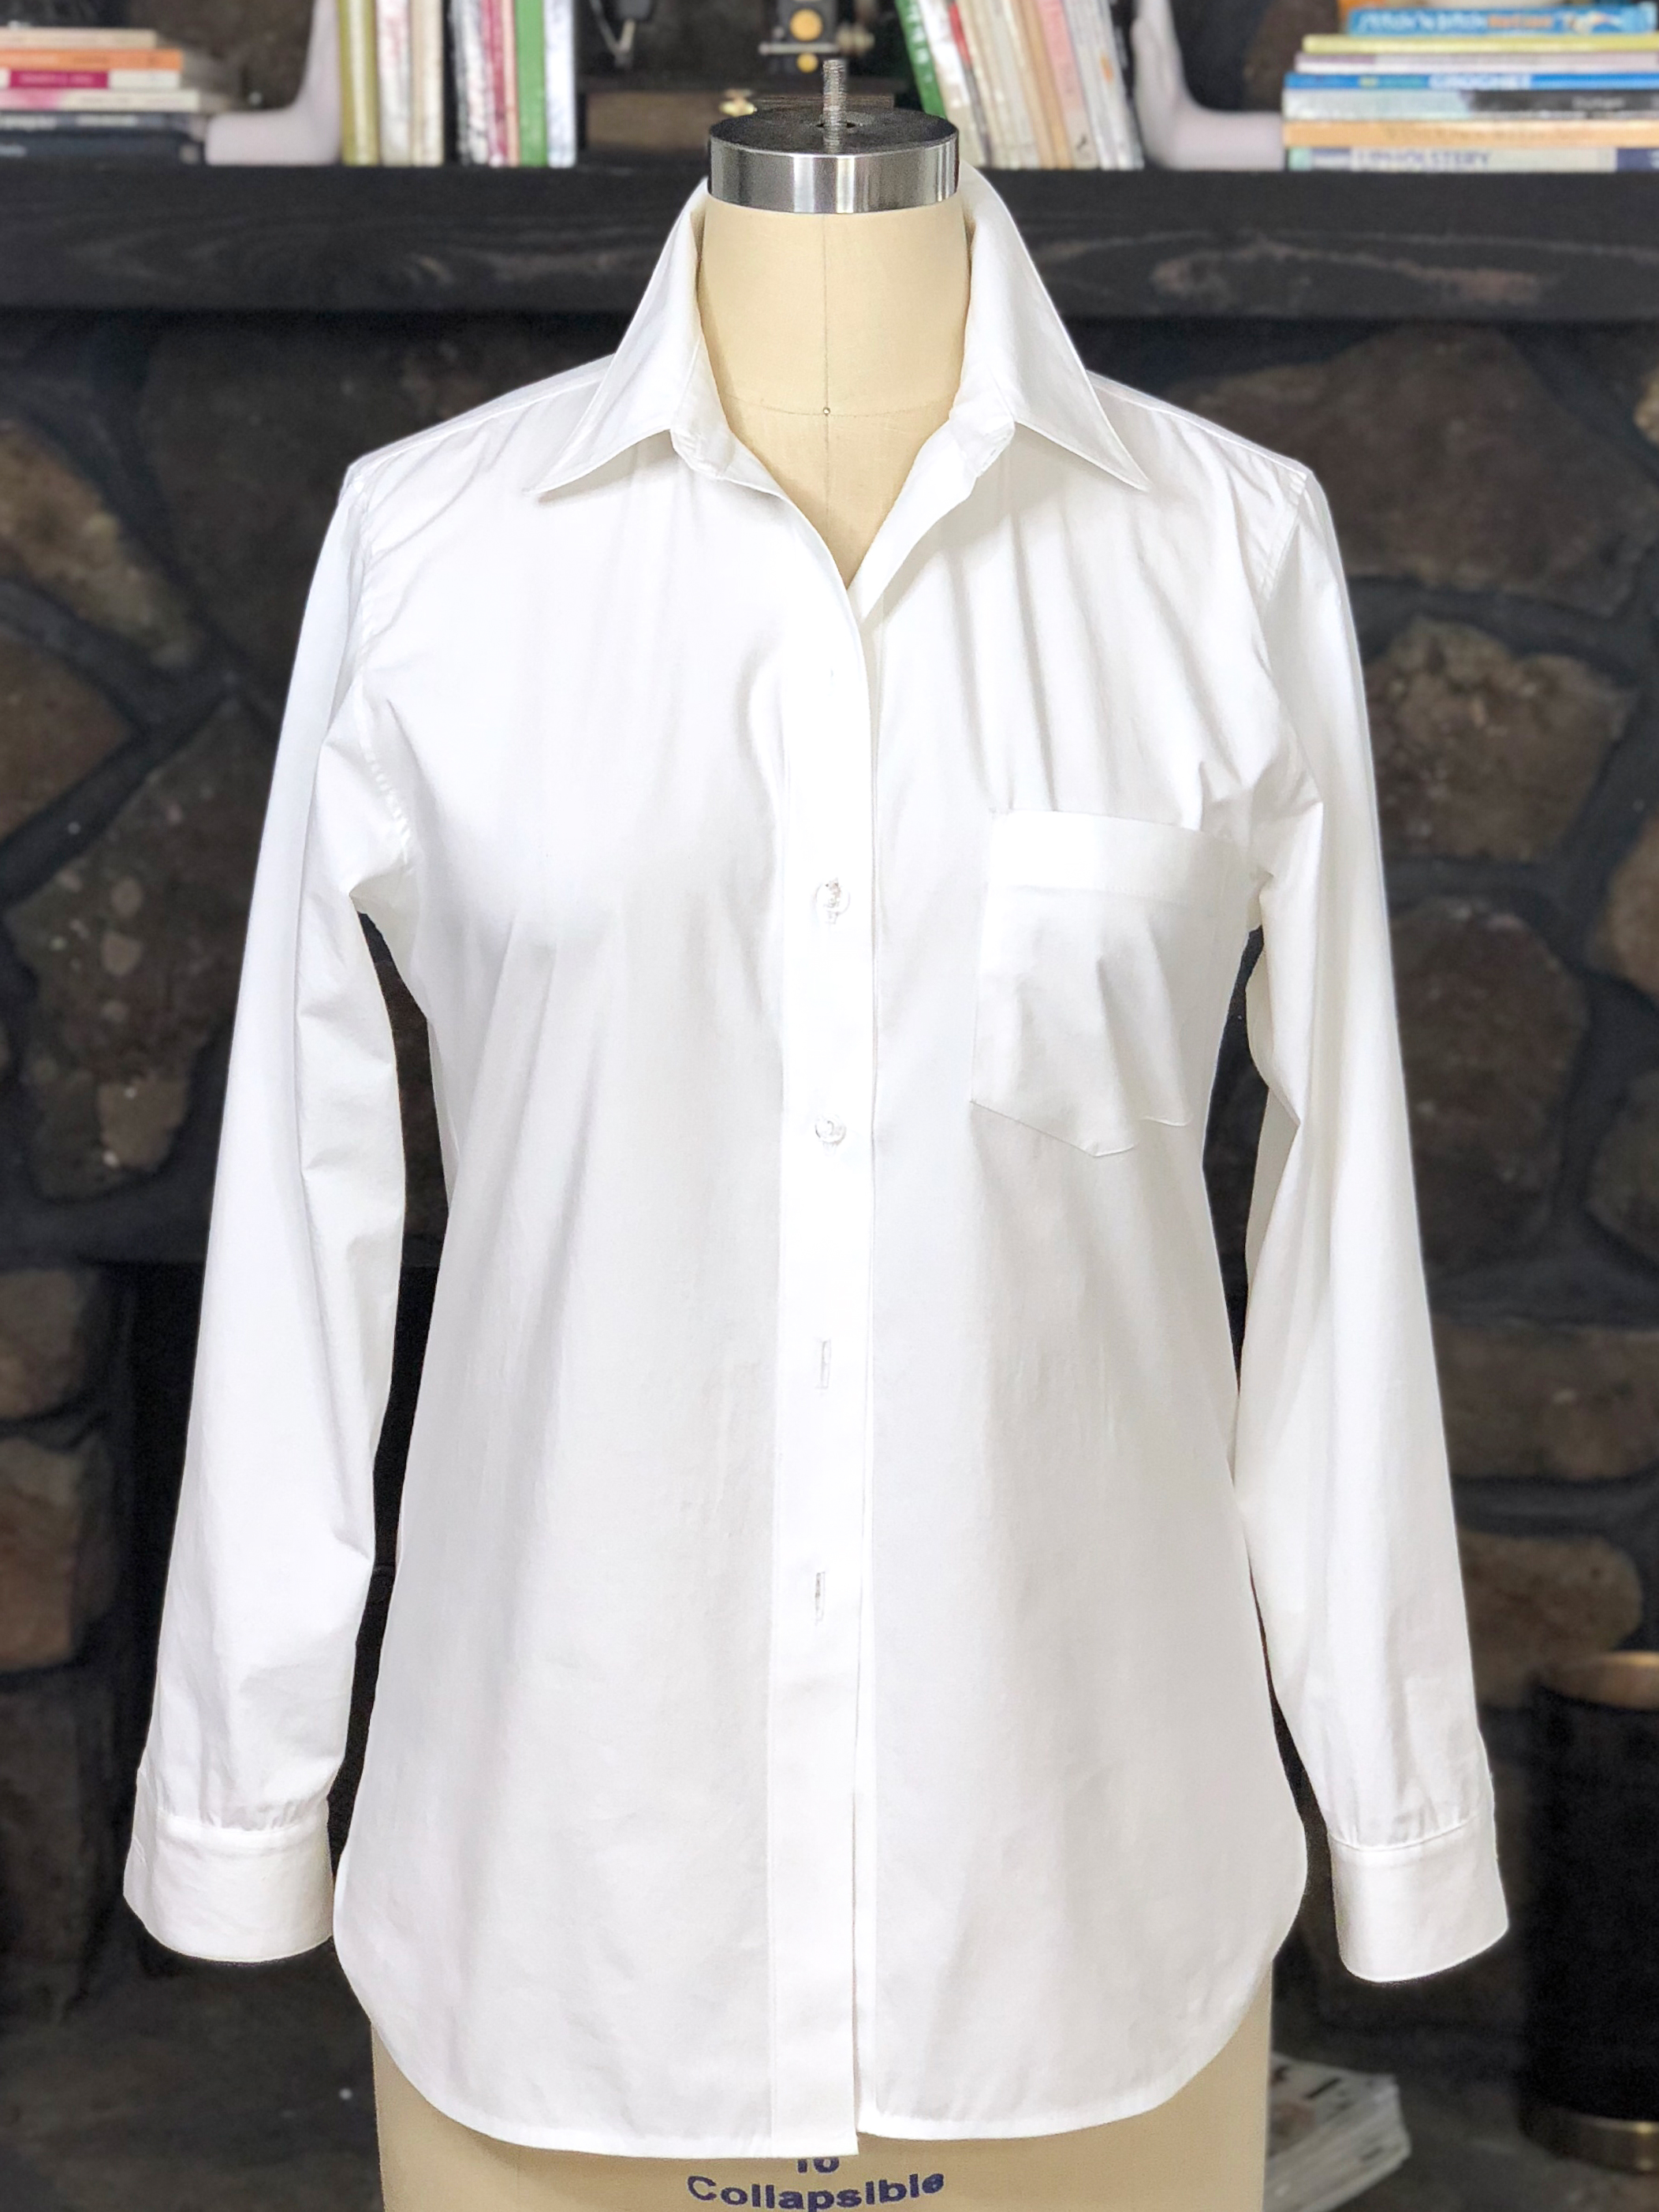 Classic Button Up Shirt Sew-Along - Part 1 - WeAllSew